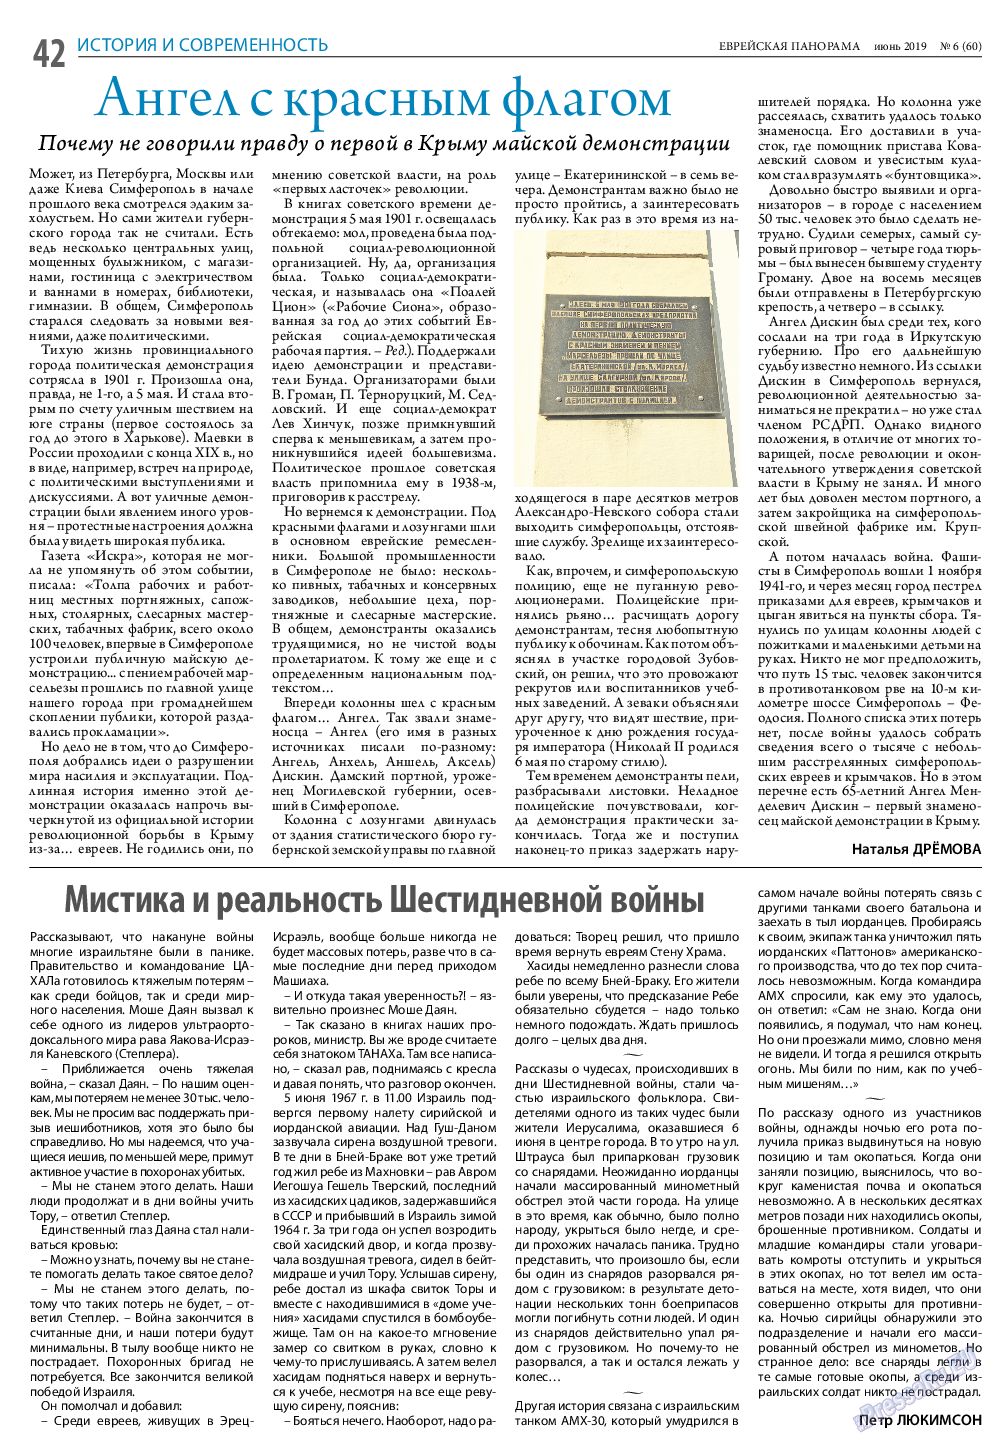 Еврейская панорама (газета). 2019 год, номер 6, стр. 42